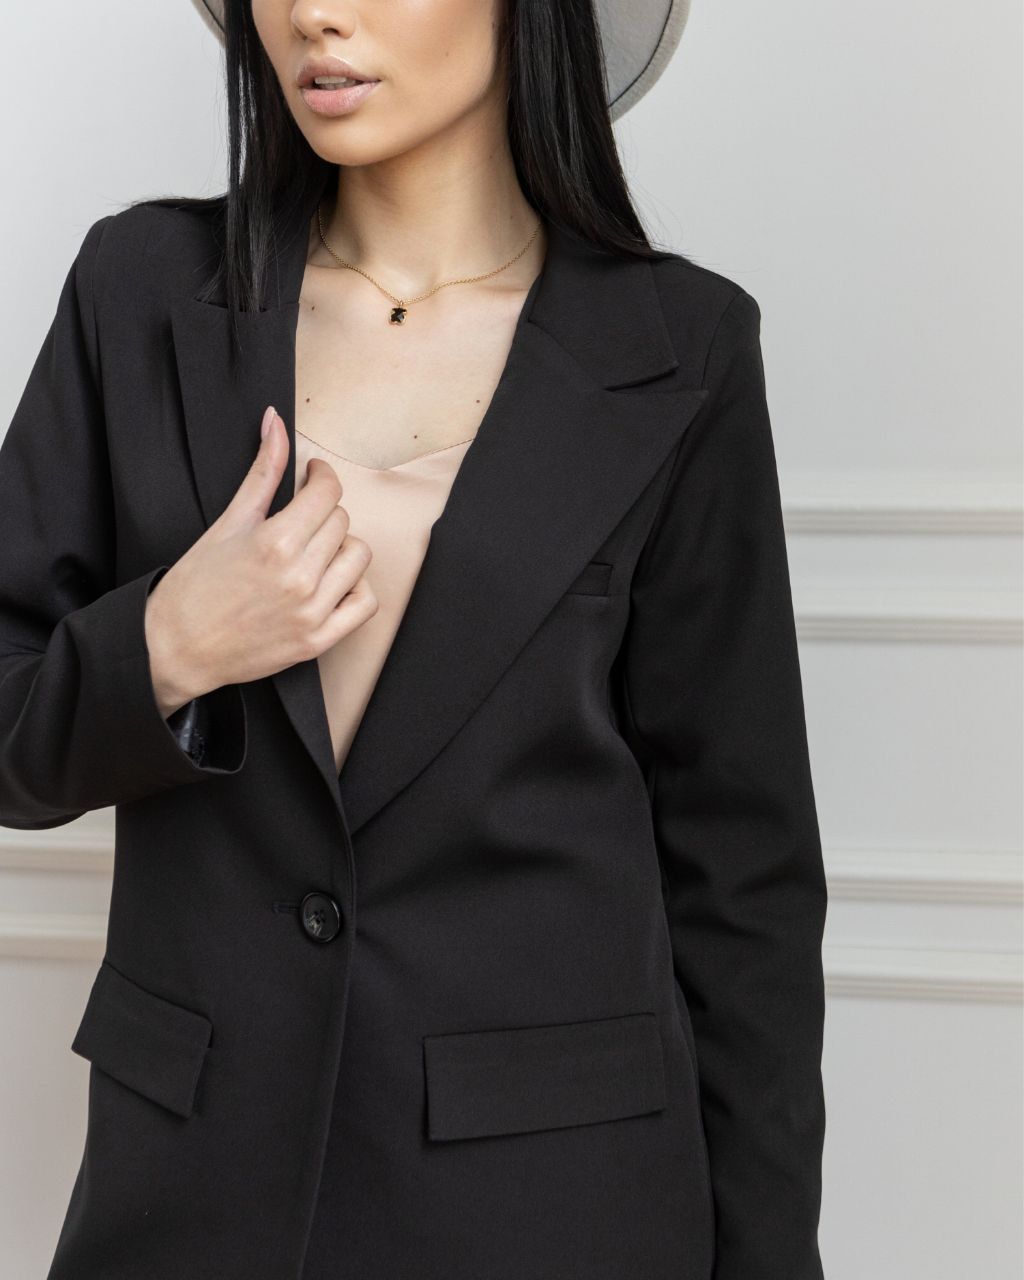 Стильный классический пиджак Сицилия черный, Черный, XS